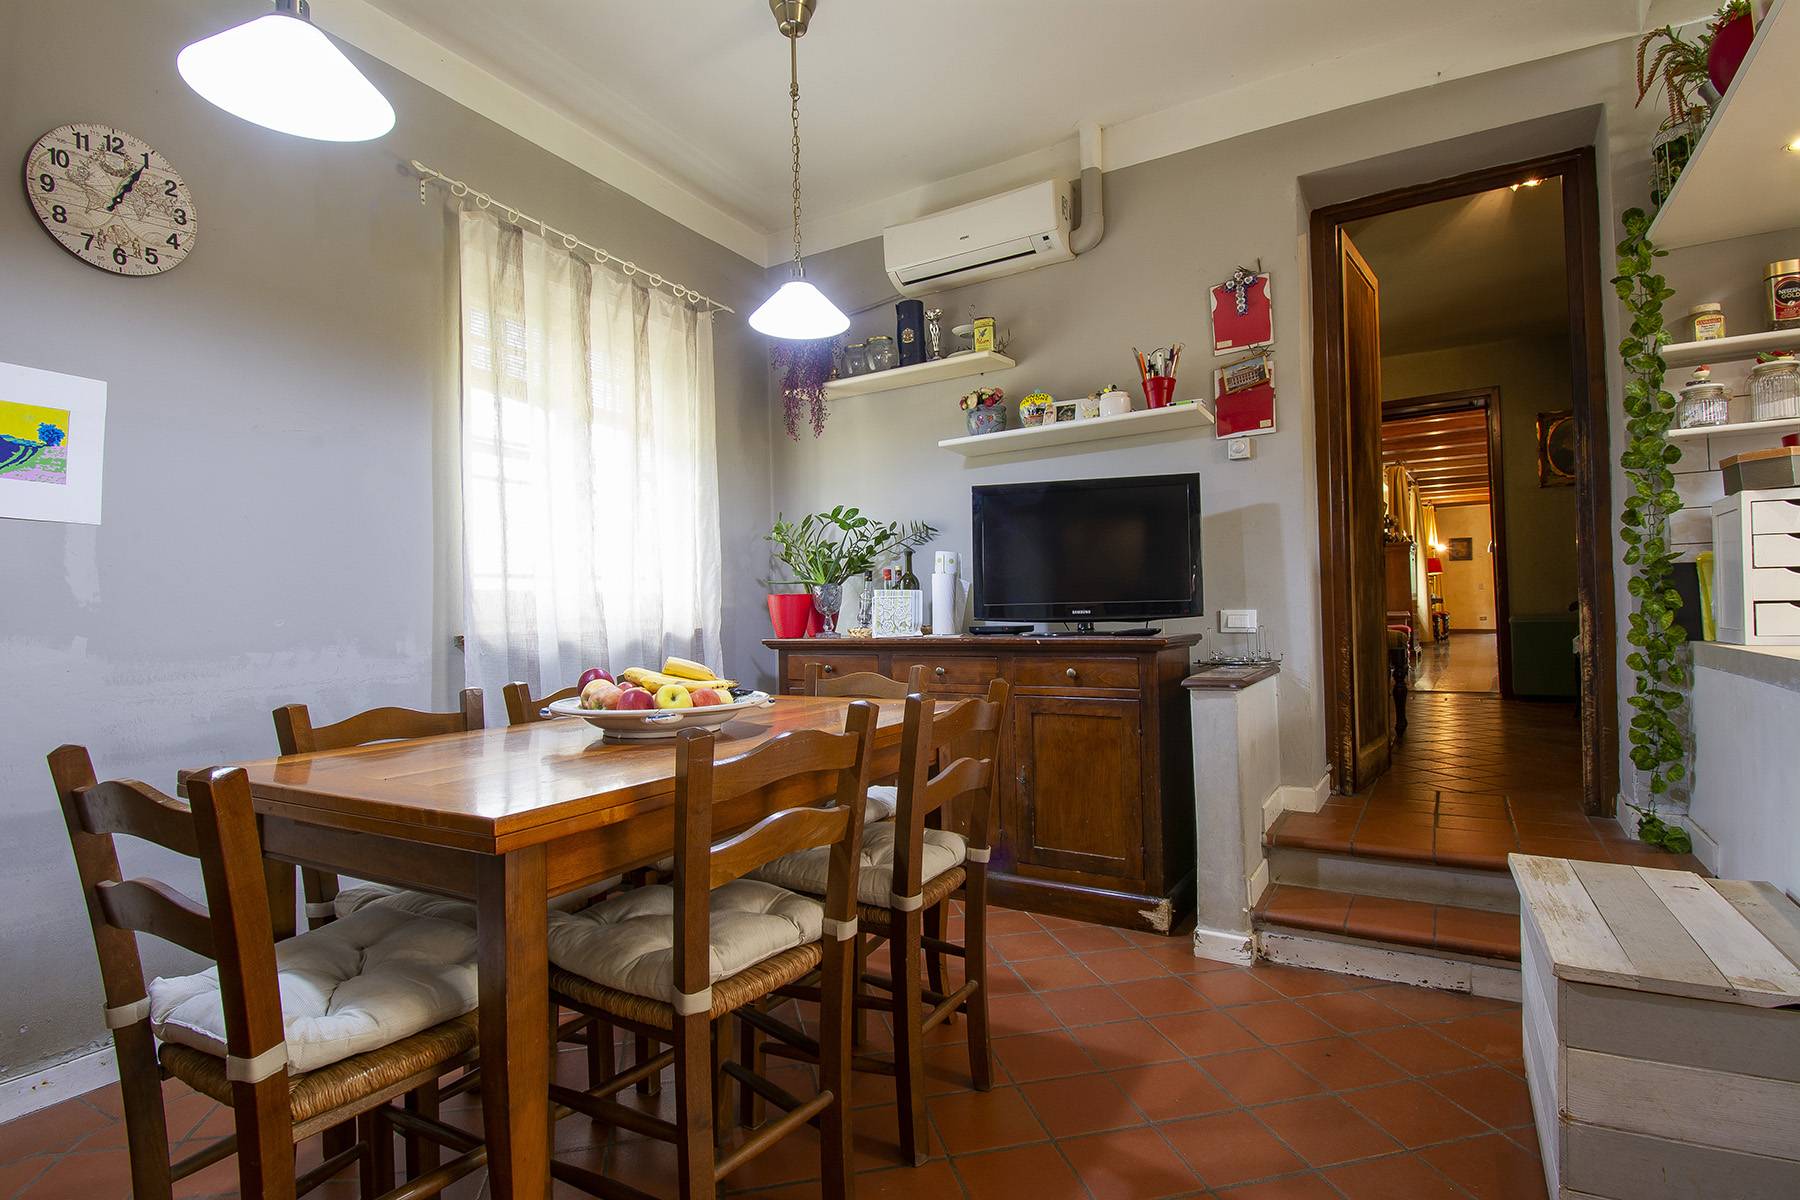 Casa indipendente in Vendita a Lucca: 5 locali, 500 mq - Foto 15